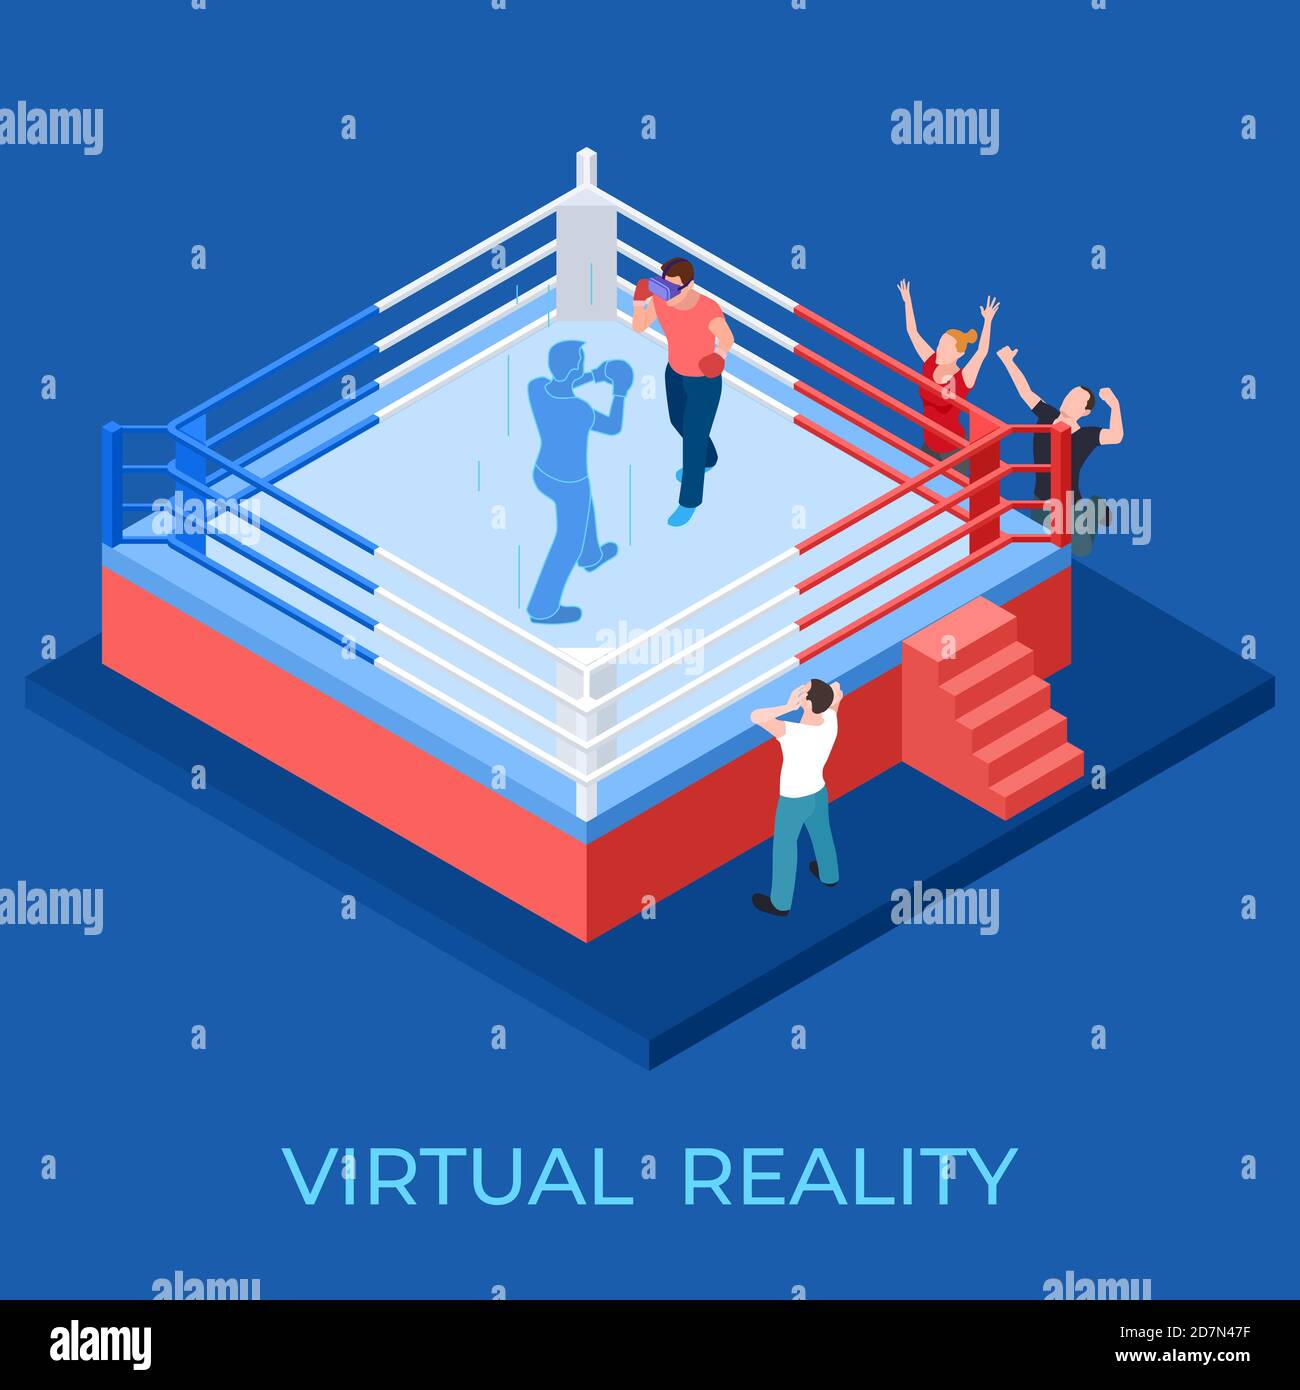 Virtual Reality Boxkampf auf isometrischen Spielplatz Vektor Illustration. Virtual-Reality-Spiel, vr-Gerät und Unterhaltung Stock Vektor